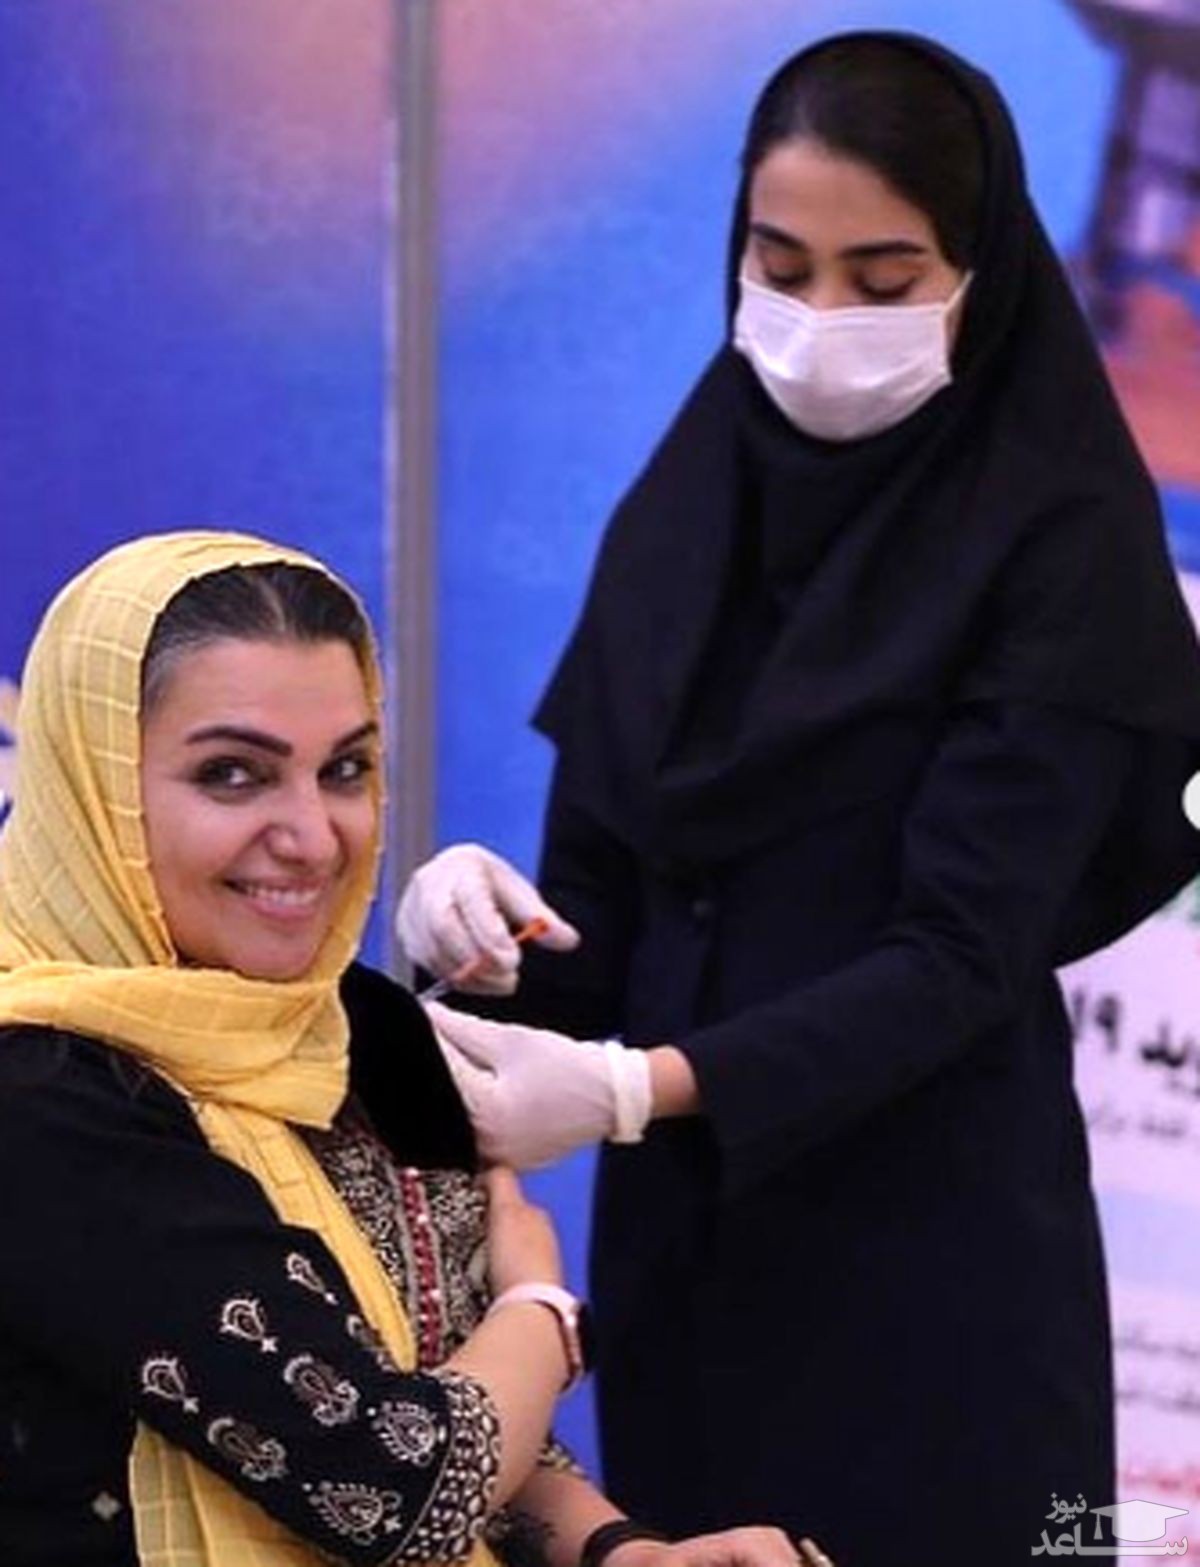 الهام پاوه نژاد در حال واکسن زدن